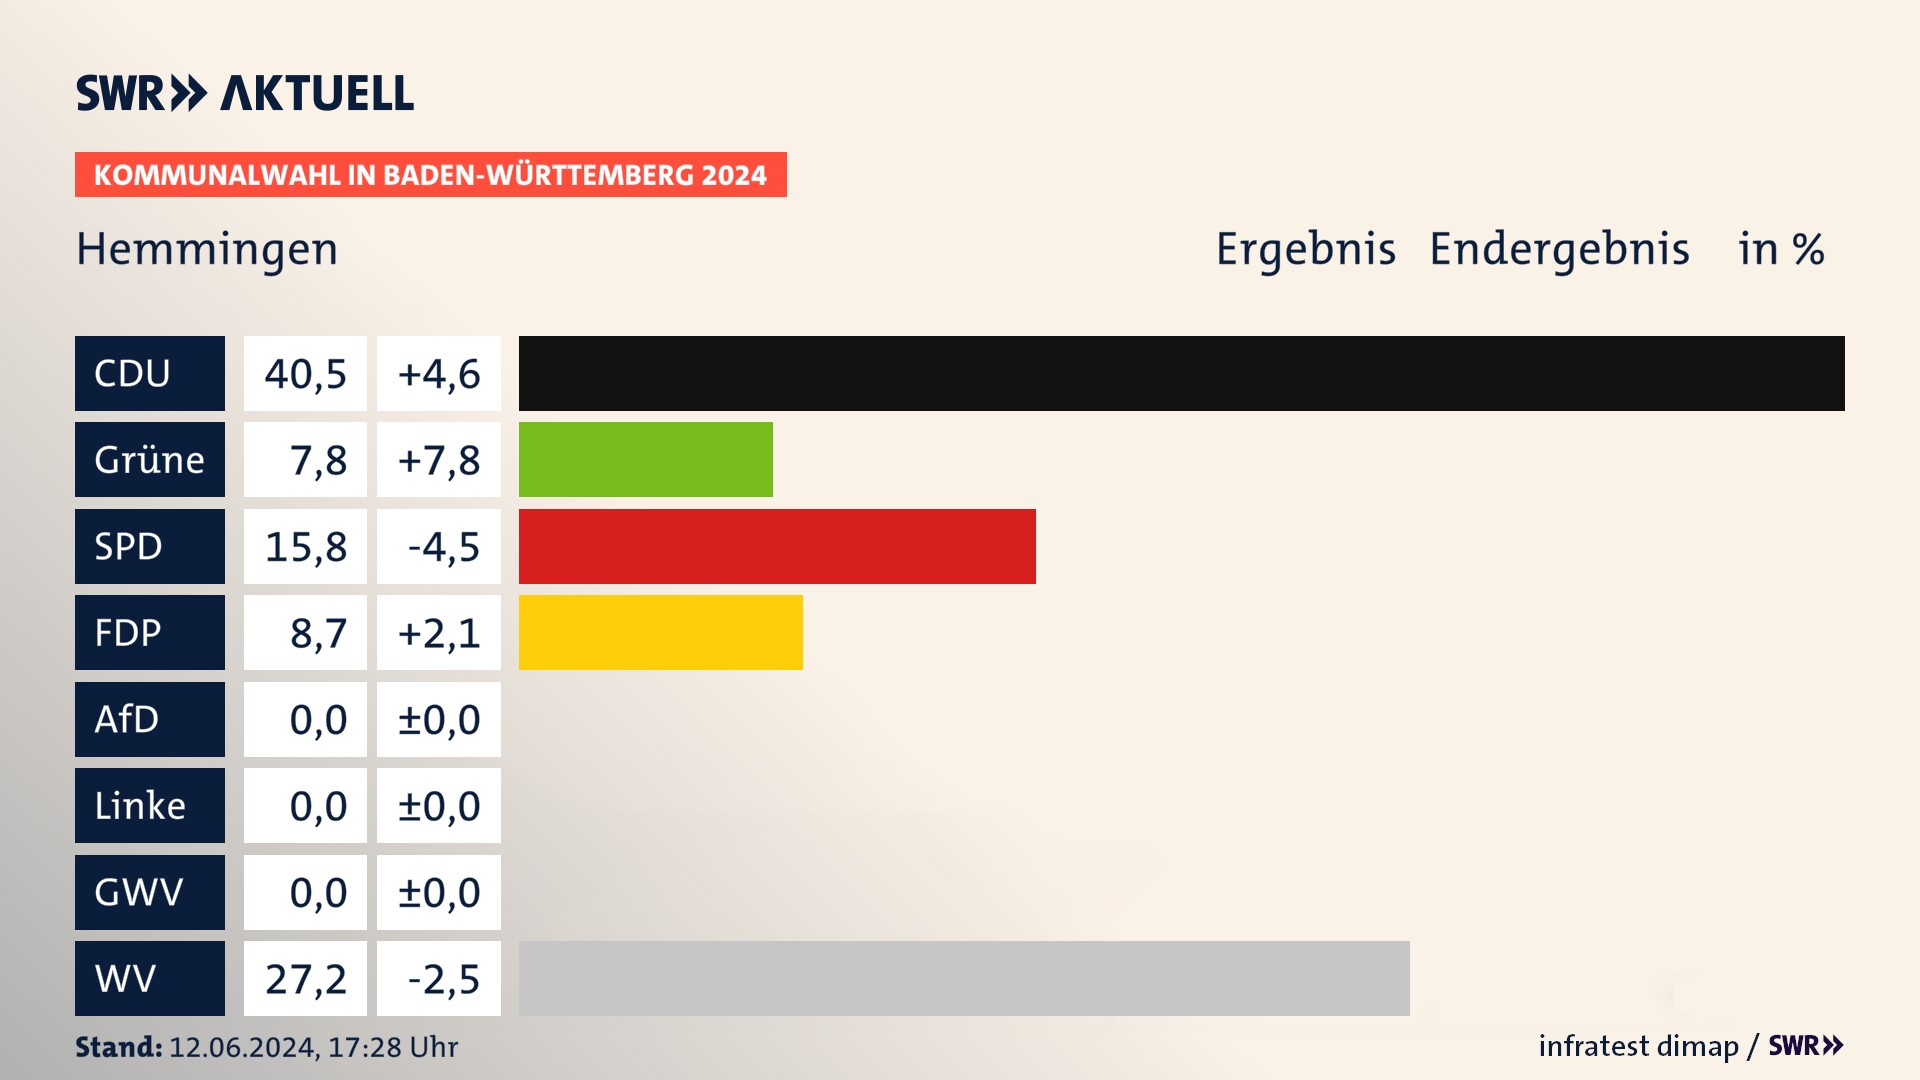 Kommunalwahl 2024 Endergebnis Zweitstimme für Hemmingen. In Hemmingen erzielt die CDU 40,5 Prozent der gültigen  Stimmen. Die Grünen landen bei 7,8 Prozent. Die SPD erreicht 15,8 Prozent. Die FDP kommt auf 8,7 Prozent. Die Wählervereinigungen landen bei 27,2 Prozent.